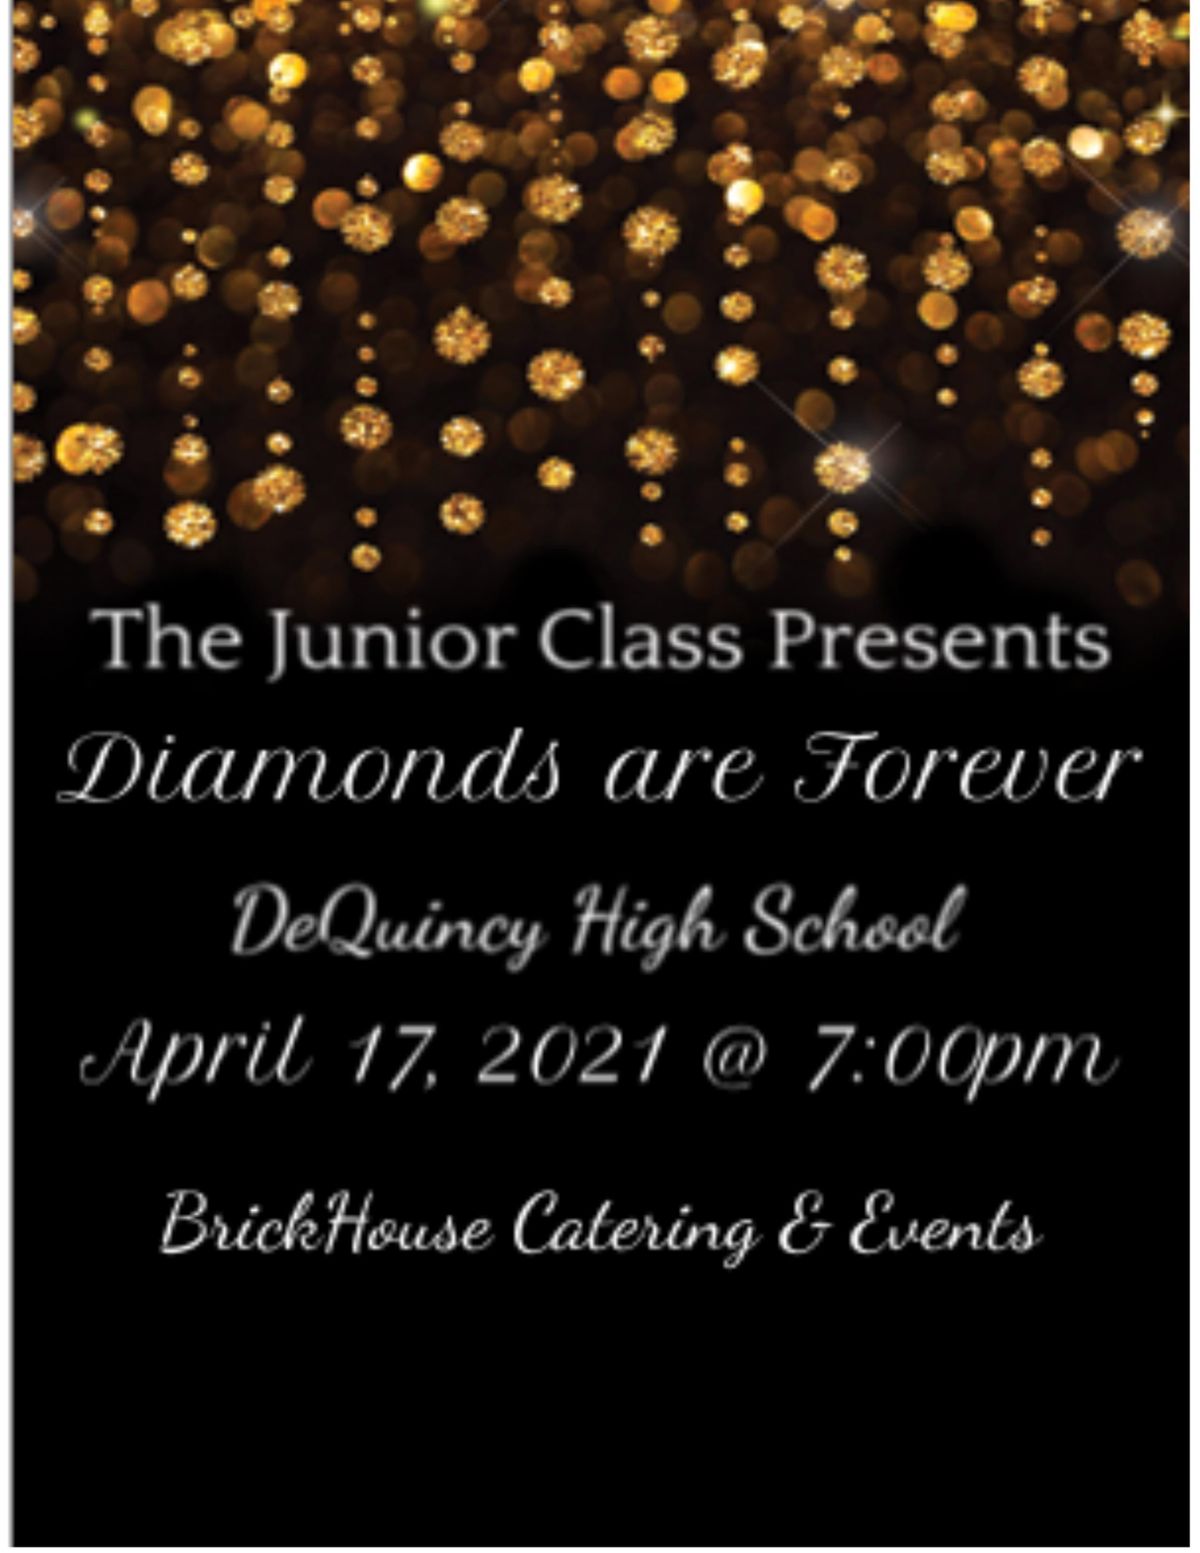 DeQuincy High Schol Junior\/Senior Prom